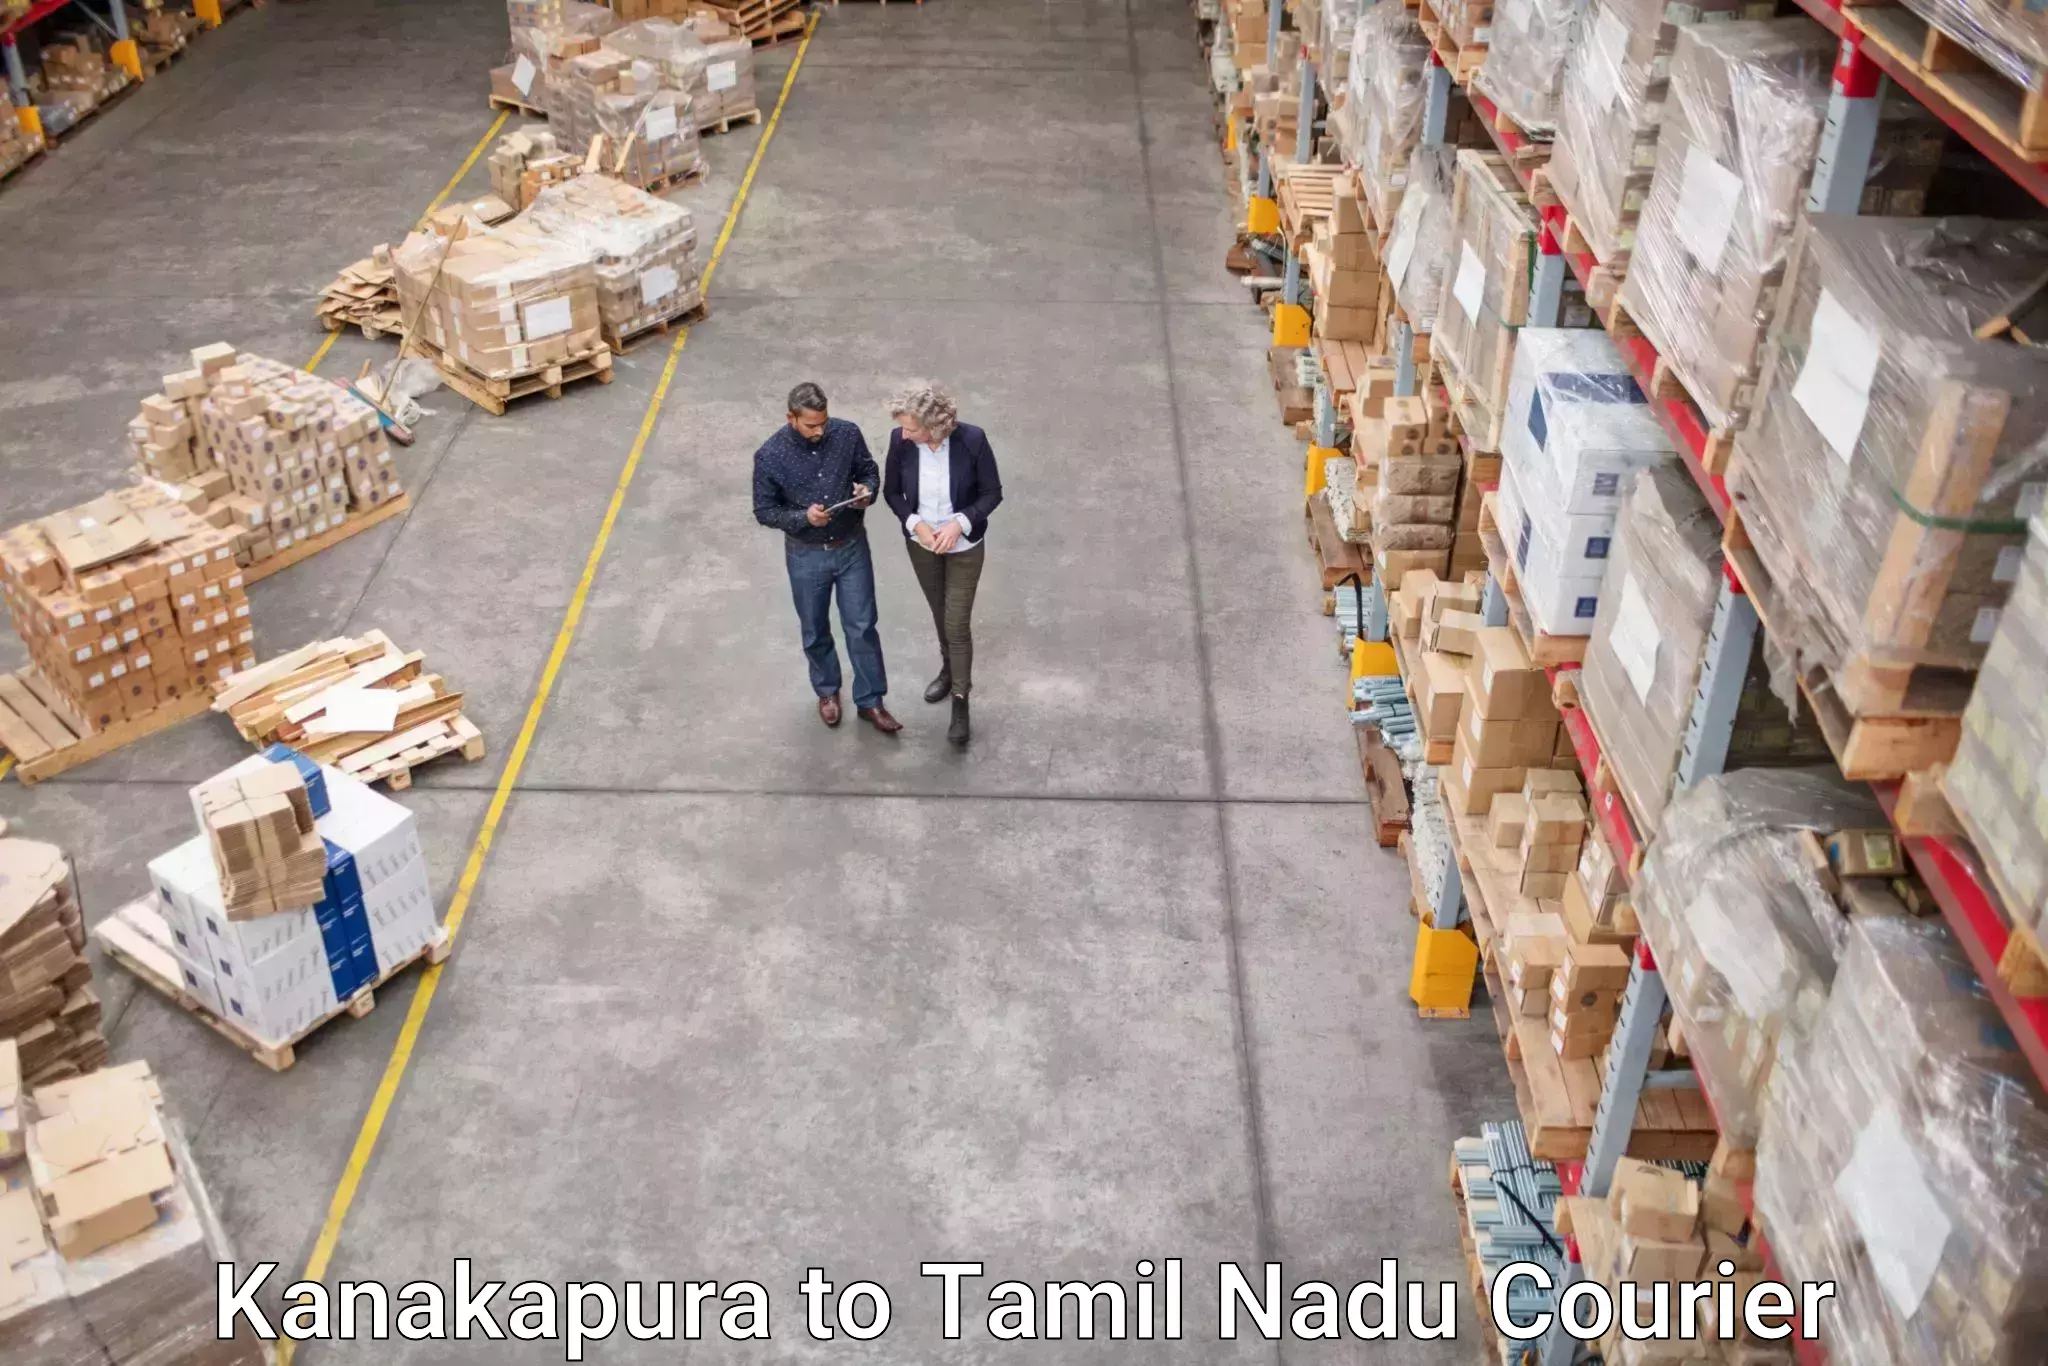 Doorstep delivery service Kanakapura to Tamil Nadu